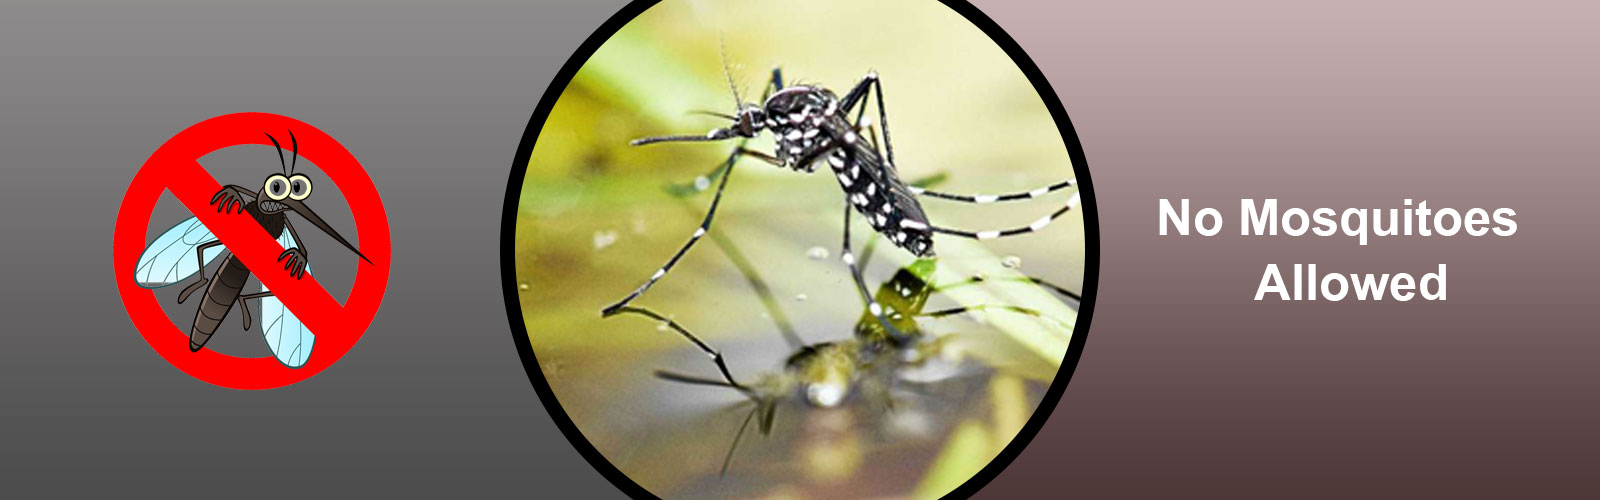 mosquito control control in chennai